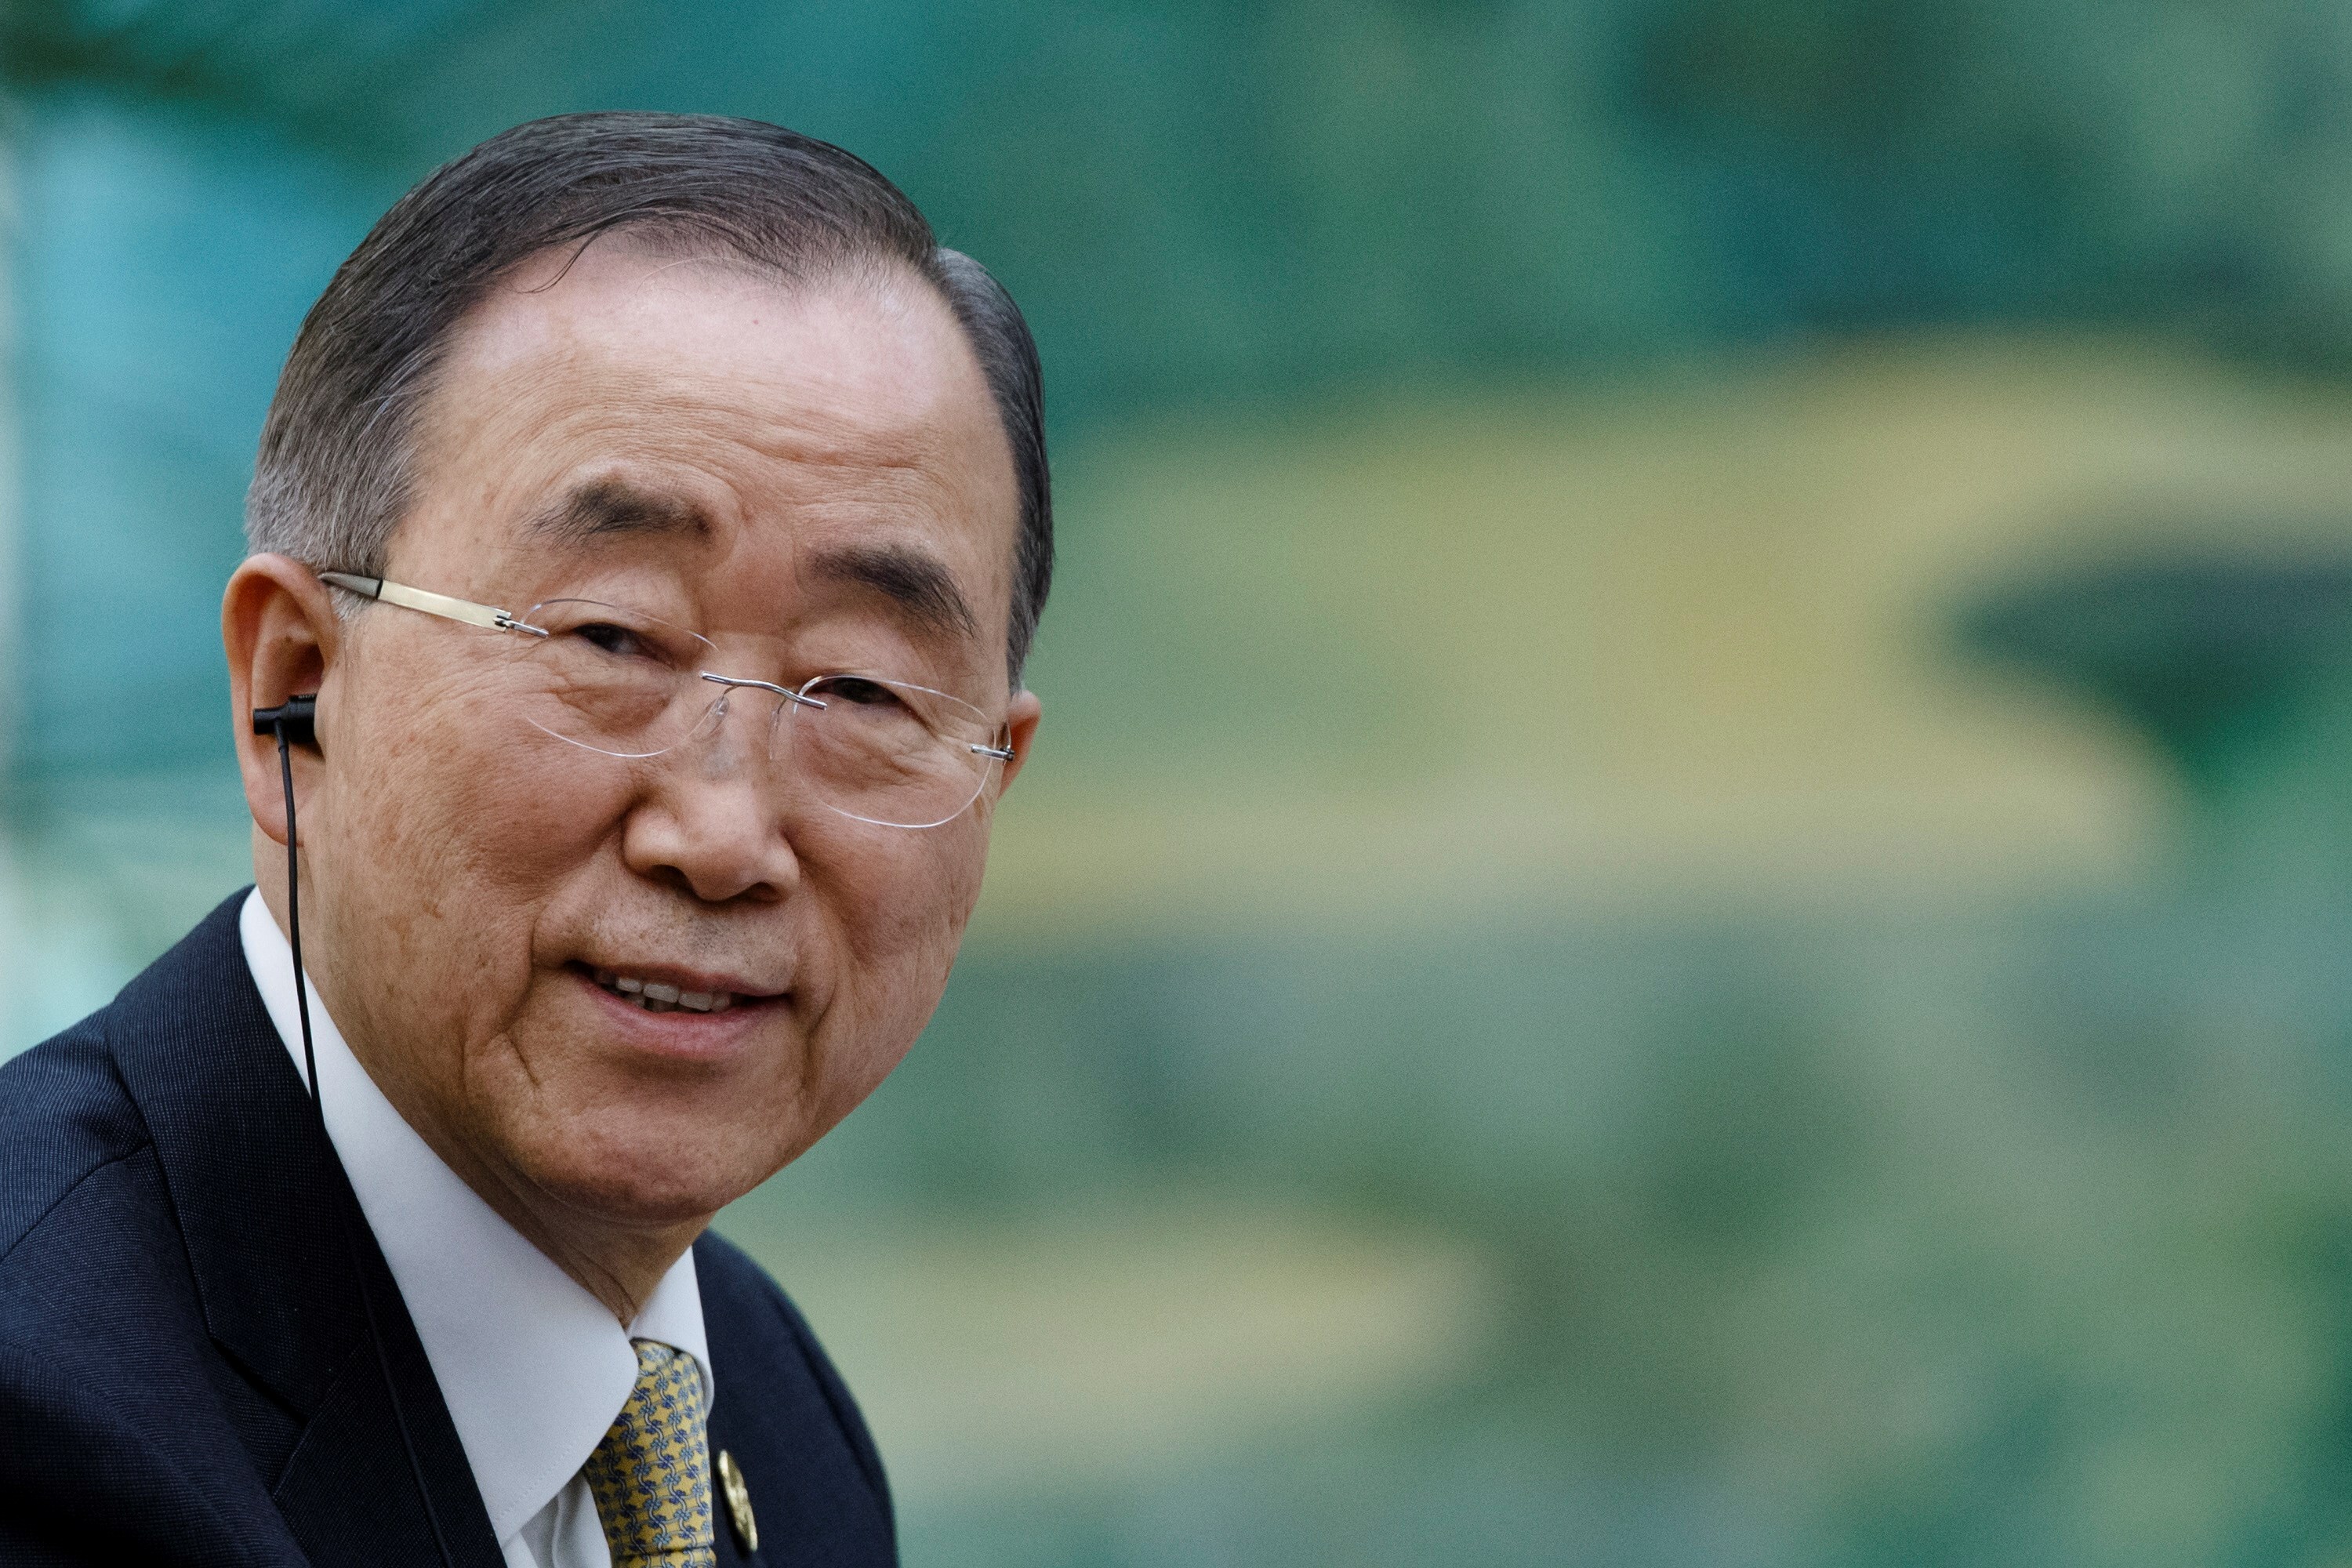 El exsecretario general de Naciones Unidas Ban Ki-moon. EFE/ Thomas Peter / Pool /Archivo
